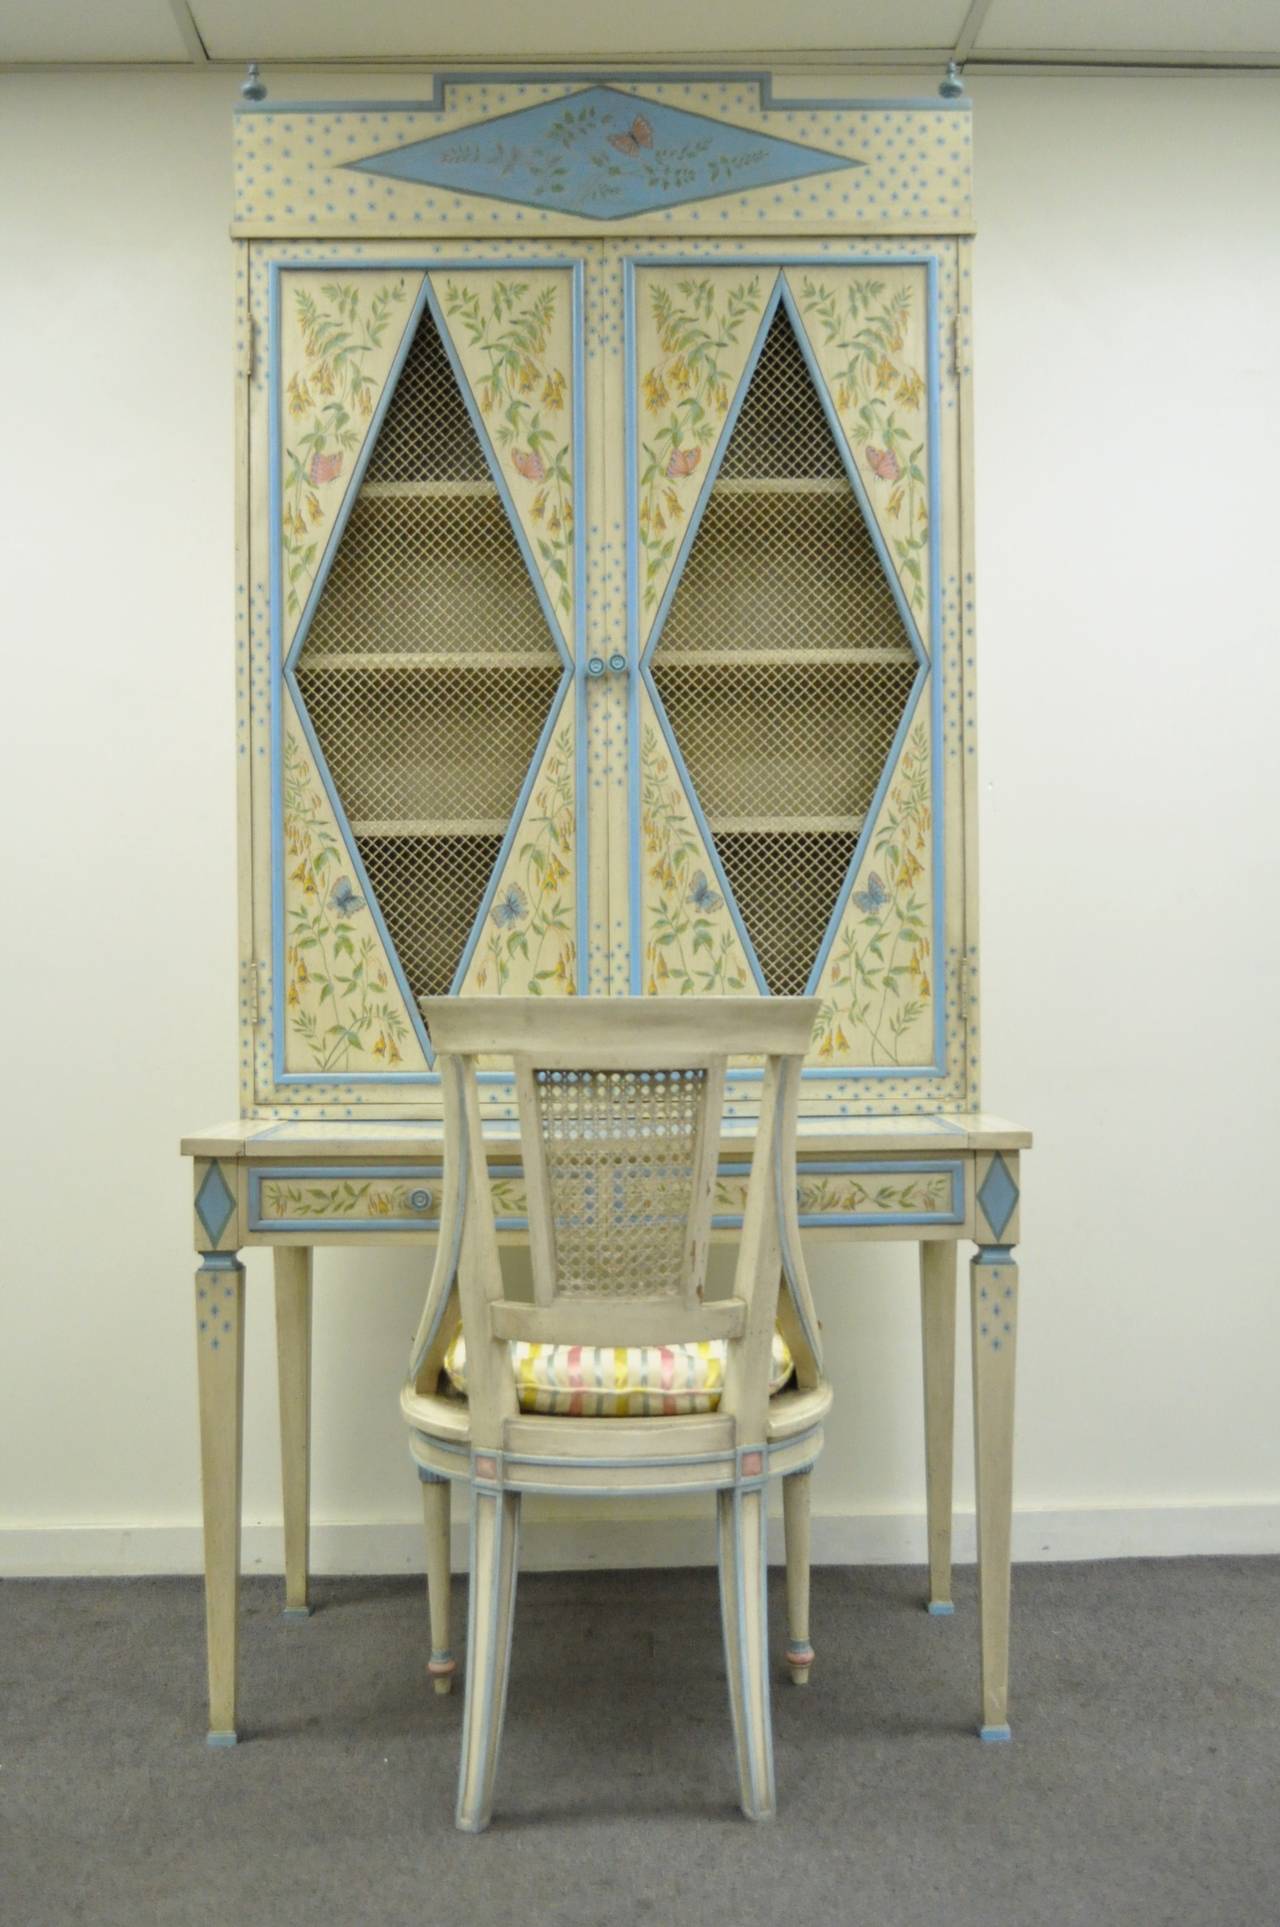 Magnifique bureau secrétaire vintage peint à la main, en deux parties, avec chaise assortie. Les pièces sont peintes dans un style italien fantaisiste, principalement en bleu et blanc cassé, avec des motifs complexes d'oiseaux et de fleurs sur le